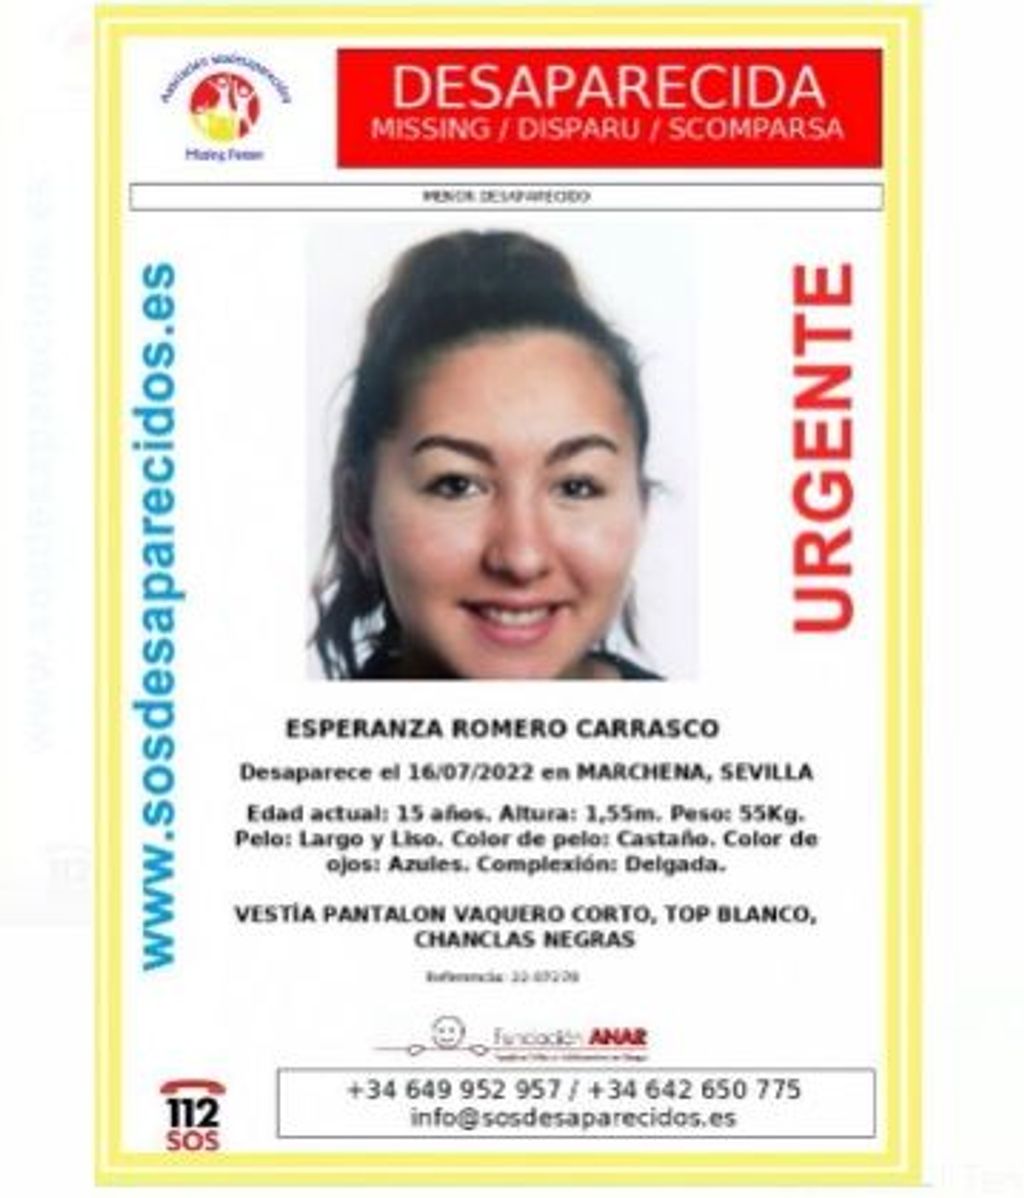 Esperanza Romero Carrasco, desaparecida en Marchena el 16 de julio de 2022